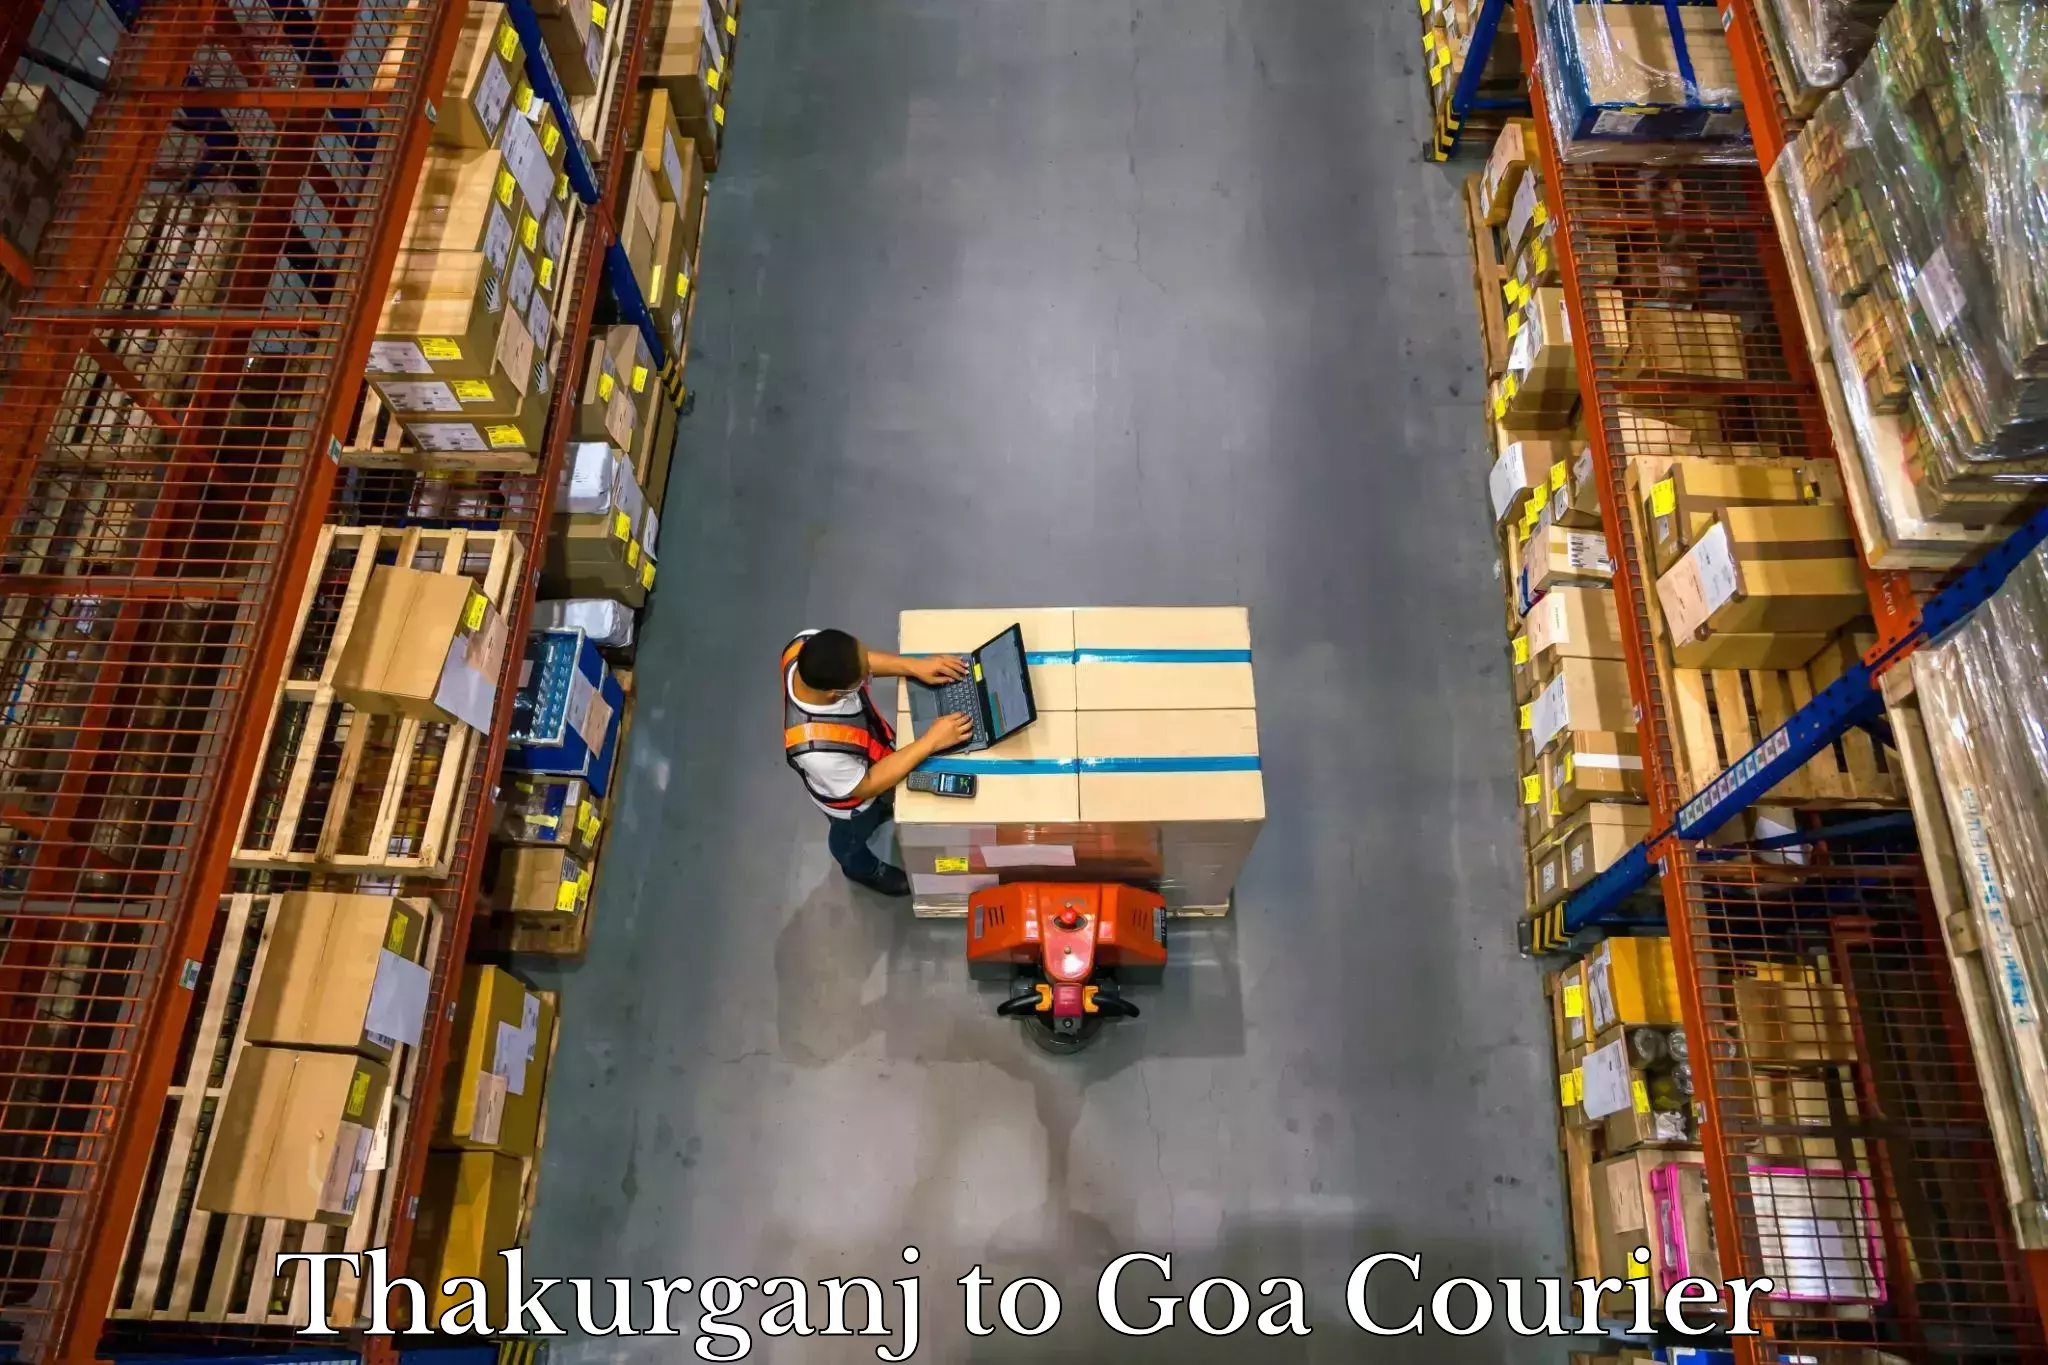 Baggage transport coordination in Thakurganj to Goa